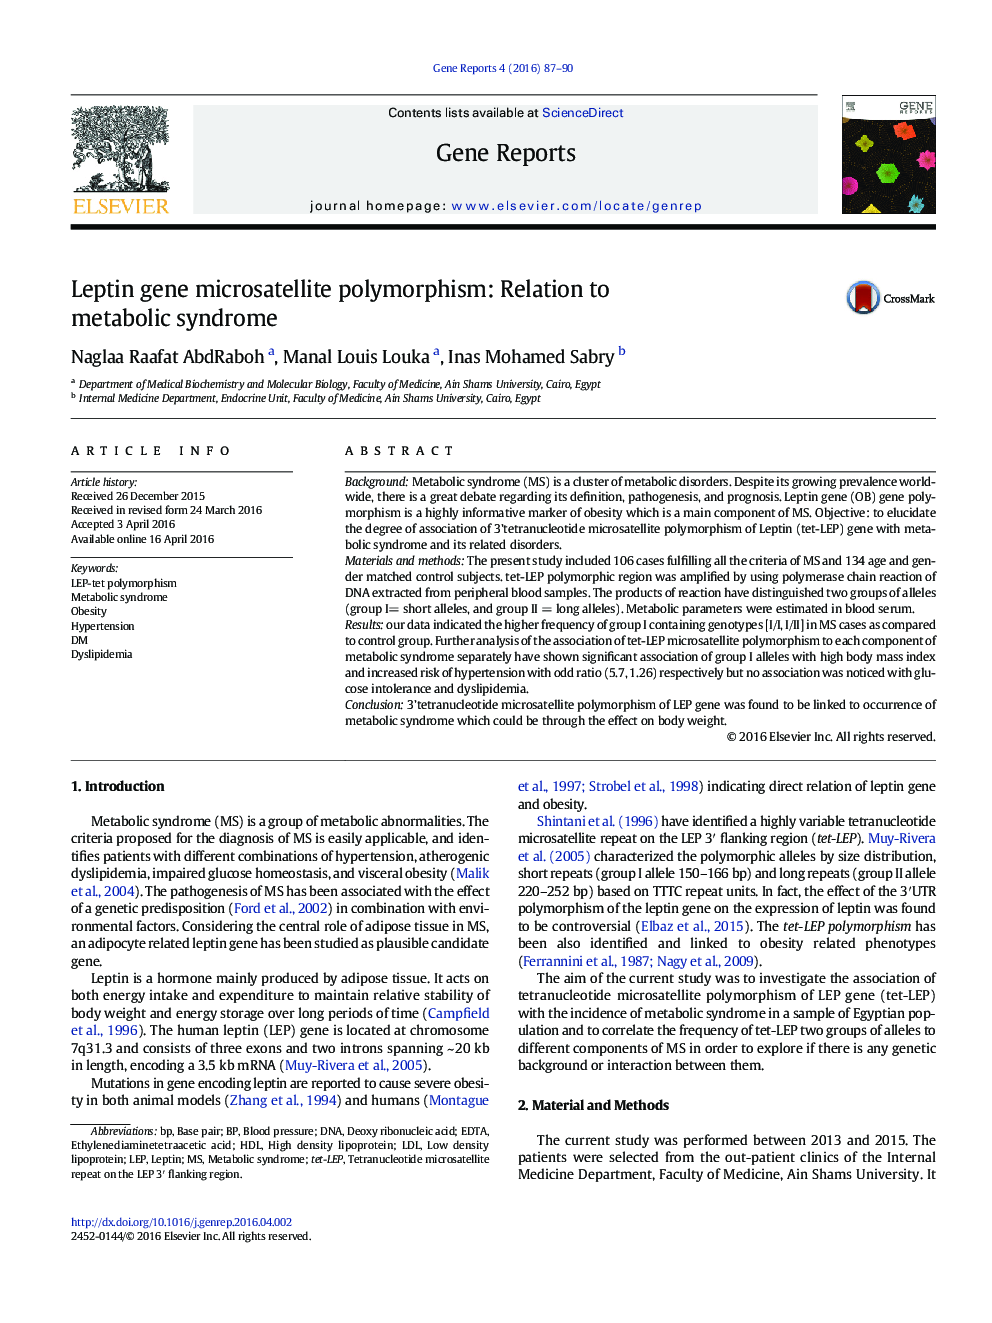 پلی مورفیسم ریزماهواره ژن لپتین: ارتباط با سندرم متابولیک